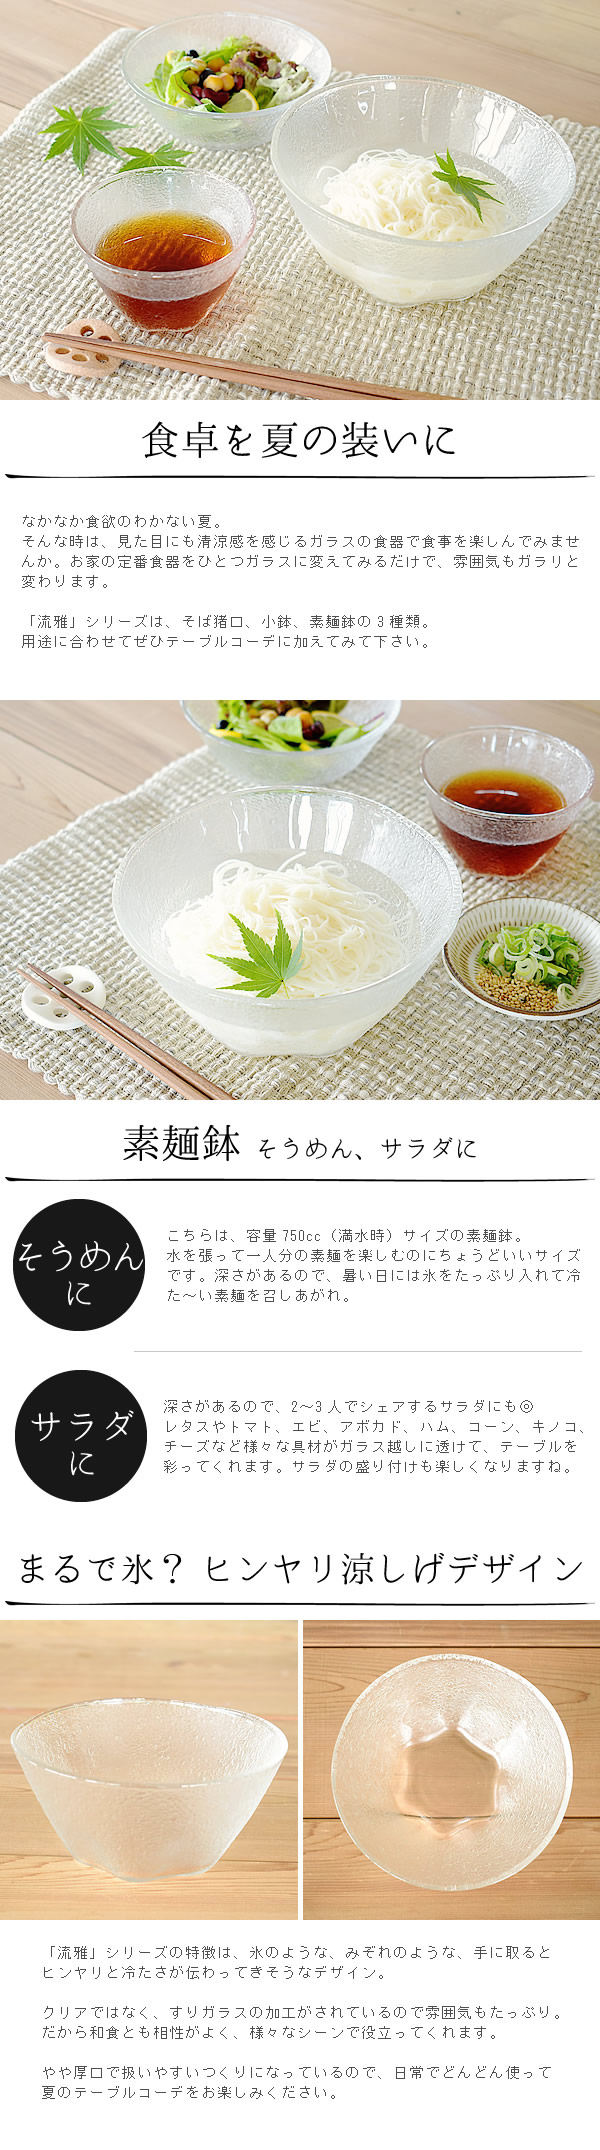 最大51 オフ 大鉢 食器 おしゃれ 日本製 ボウル 素麺鉢 サラダボウル P 6384 流雅素麺鉢 Discoversvg Com